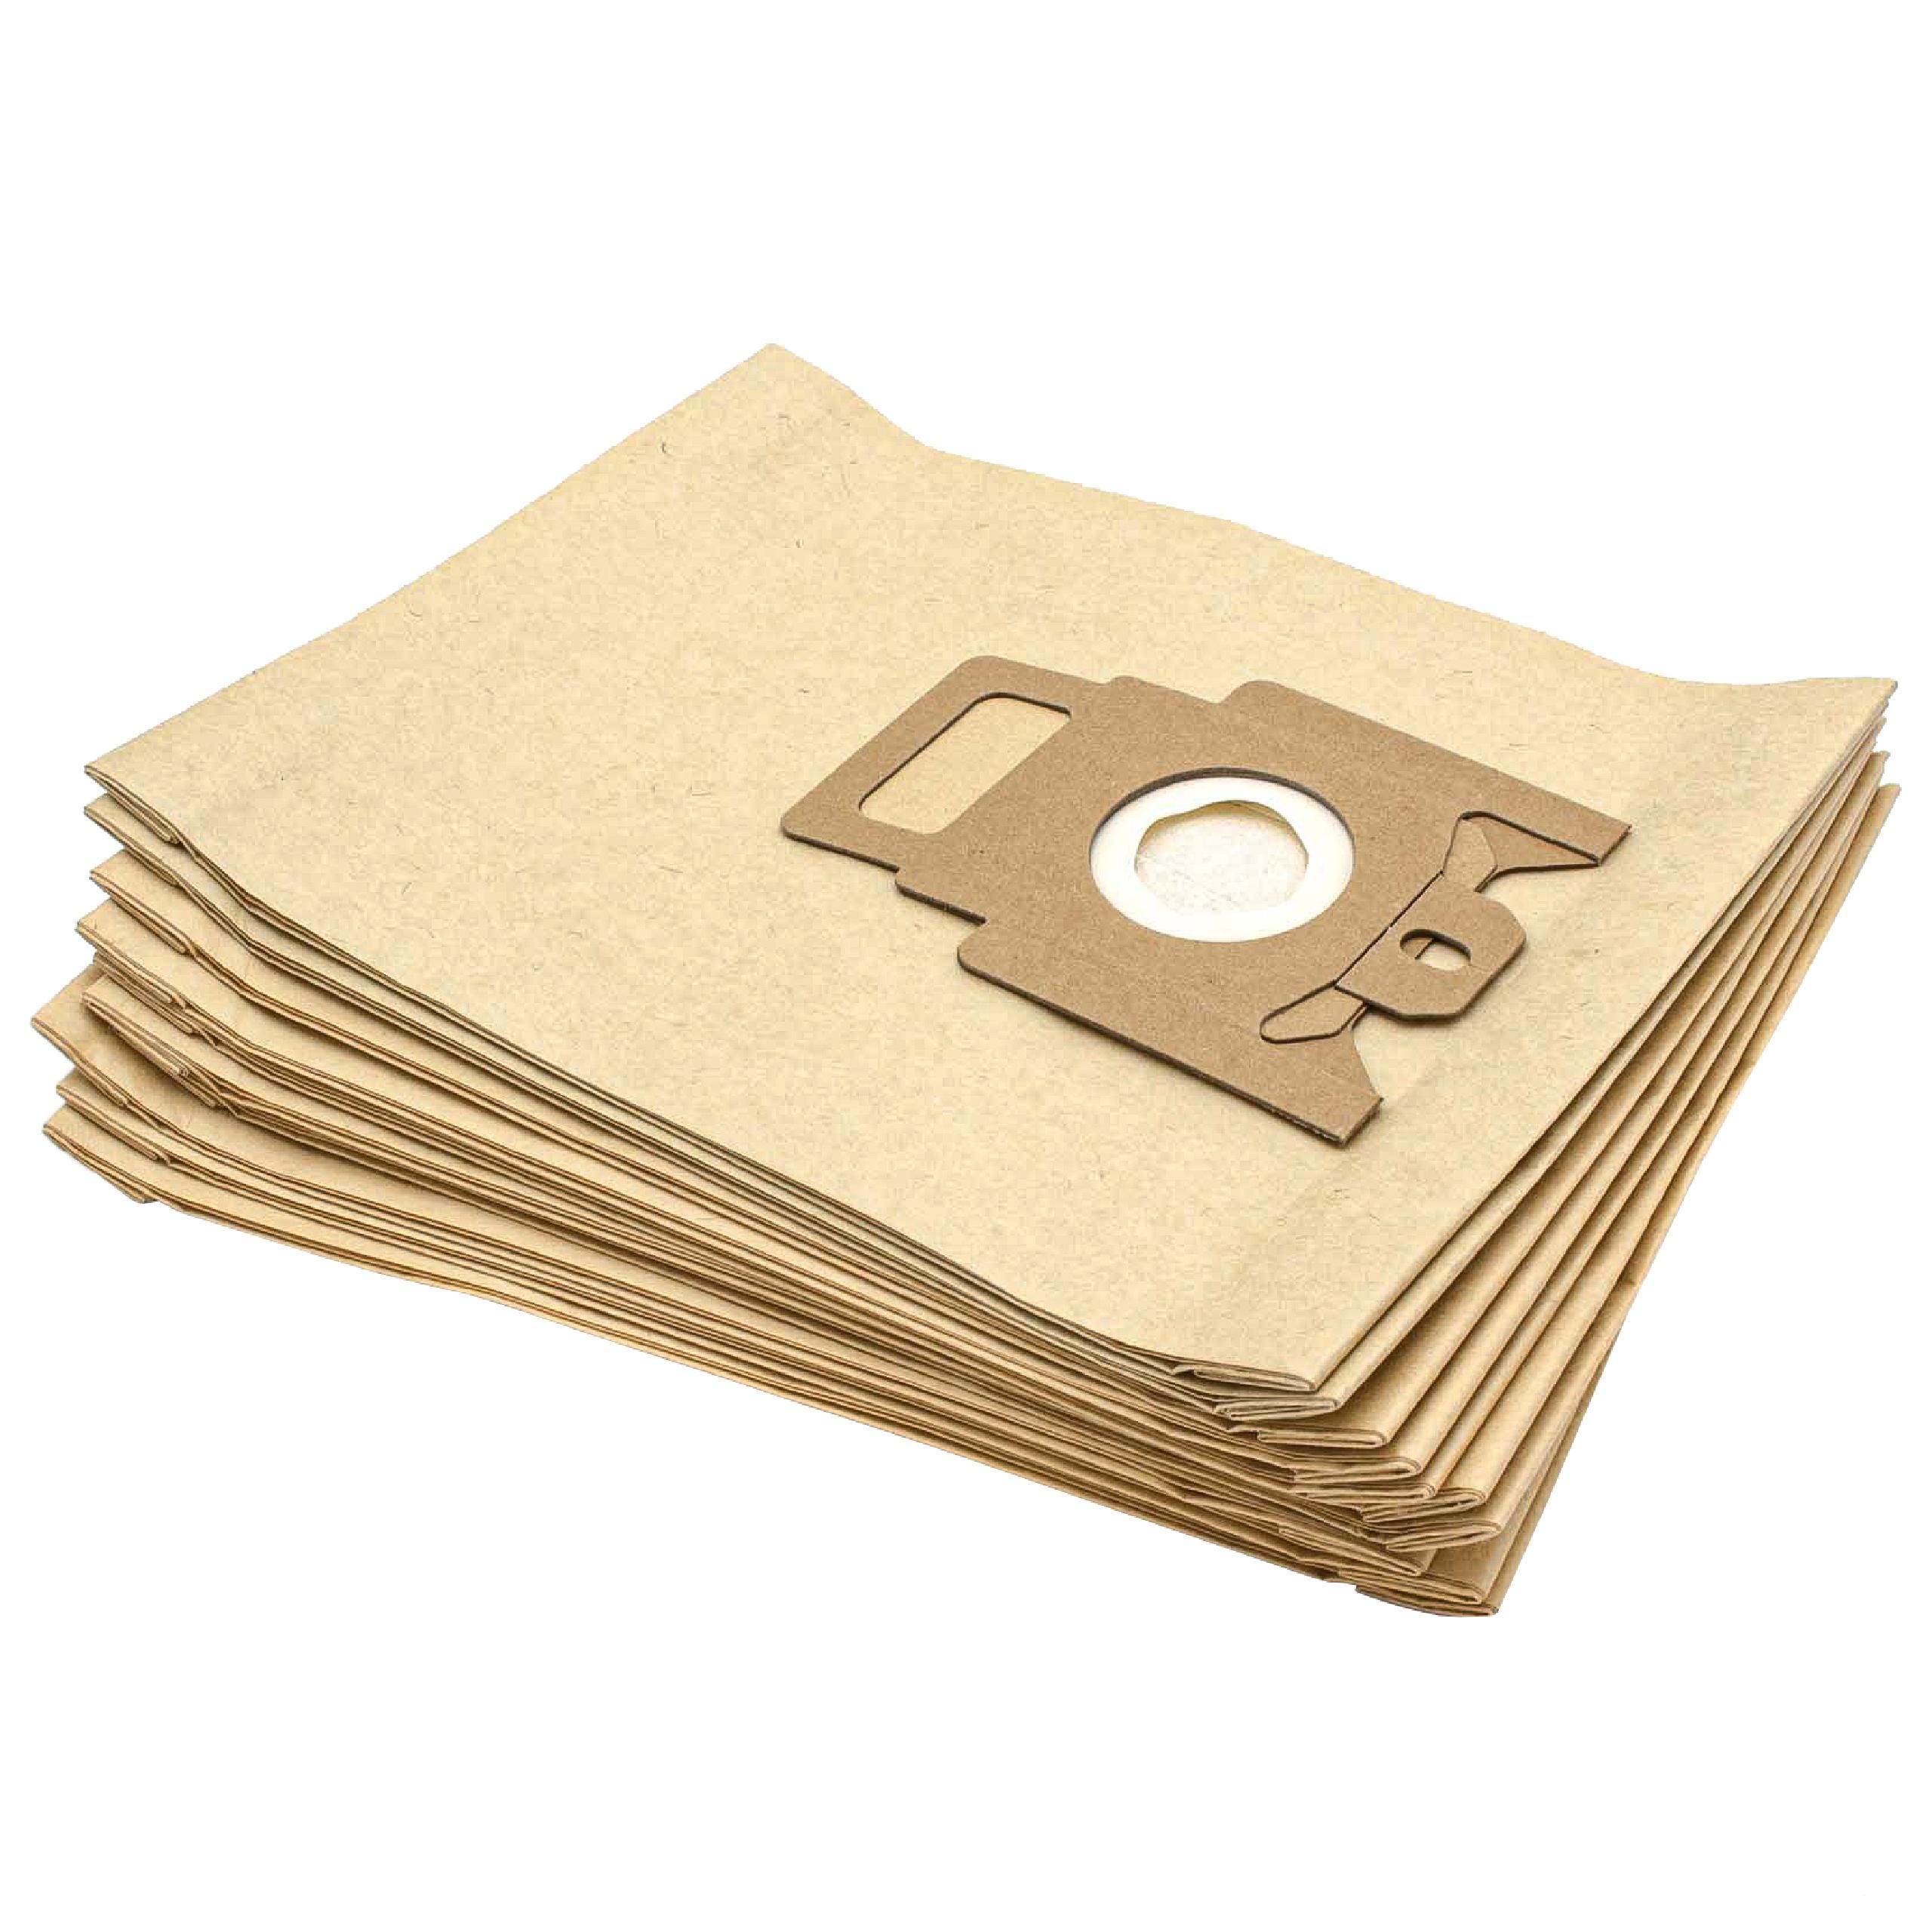 Vhbw 10x sacchetto dell'aspirapolvere compatibile con Miele Gold 2000, K/K,  Medicair mini aspirapolvere - in carta, Typ M, 28cm x 19,5cm, color sabbia